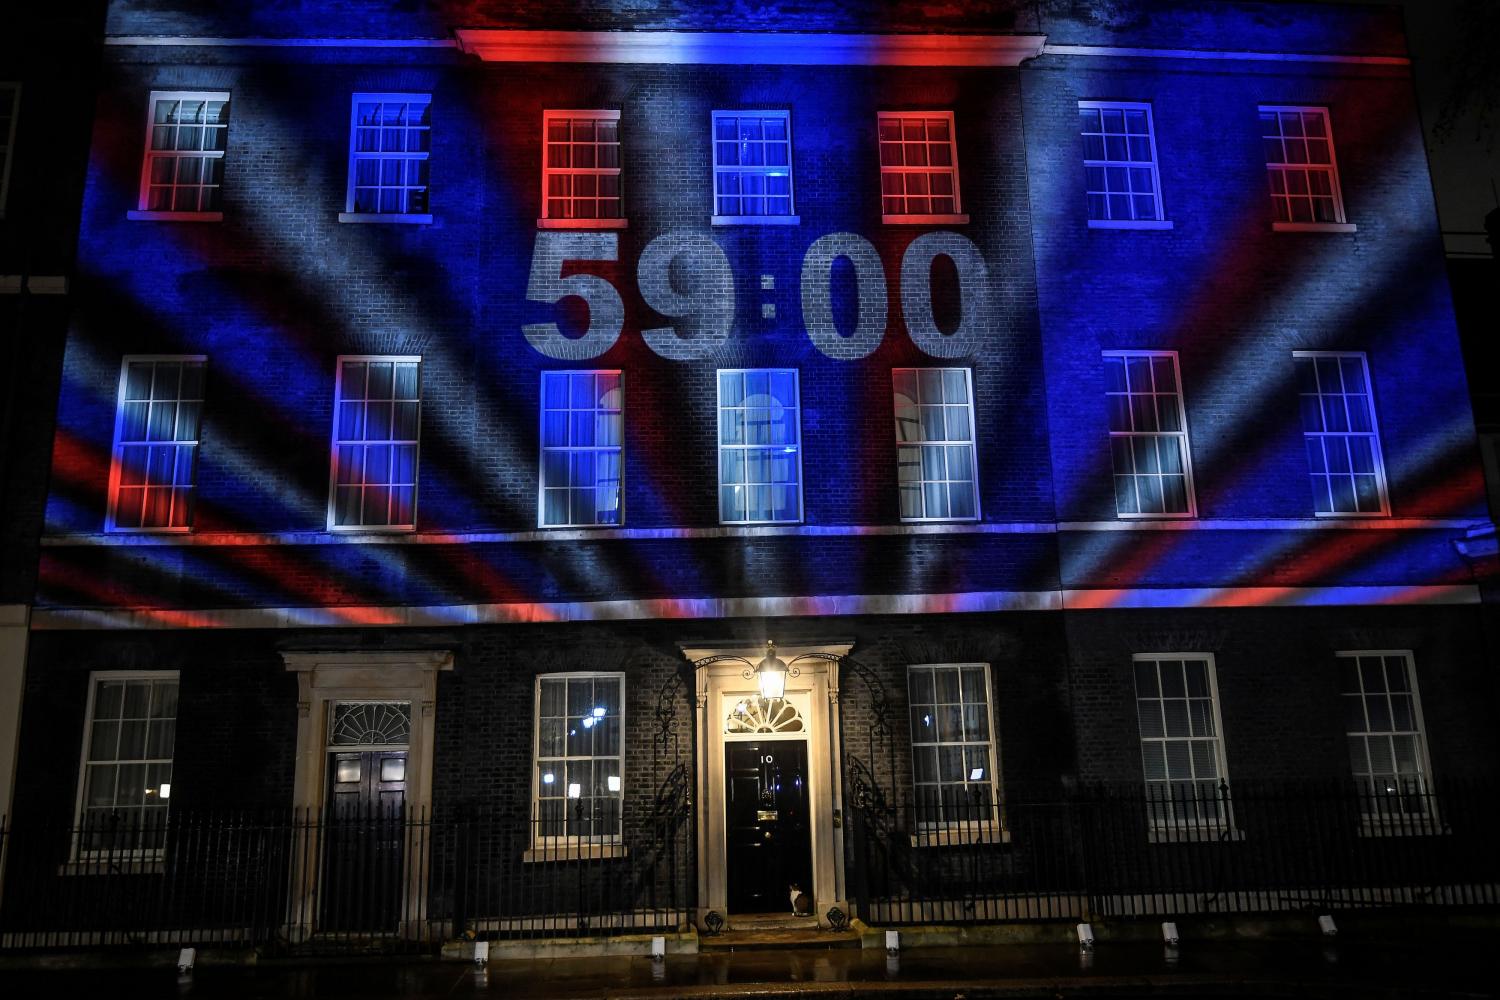 Una cuenta regresiva se proyectó en el número 10 de la calle Downing Street es la residencia oficial del primer ministro del Reino Unido